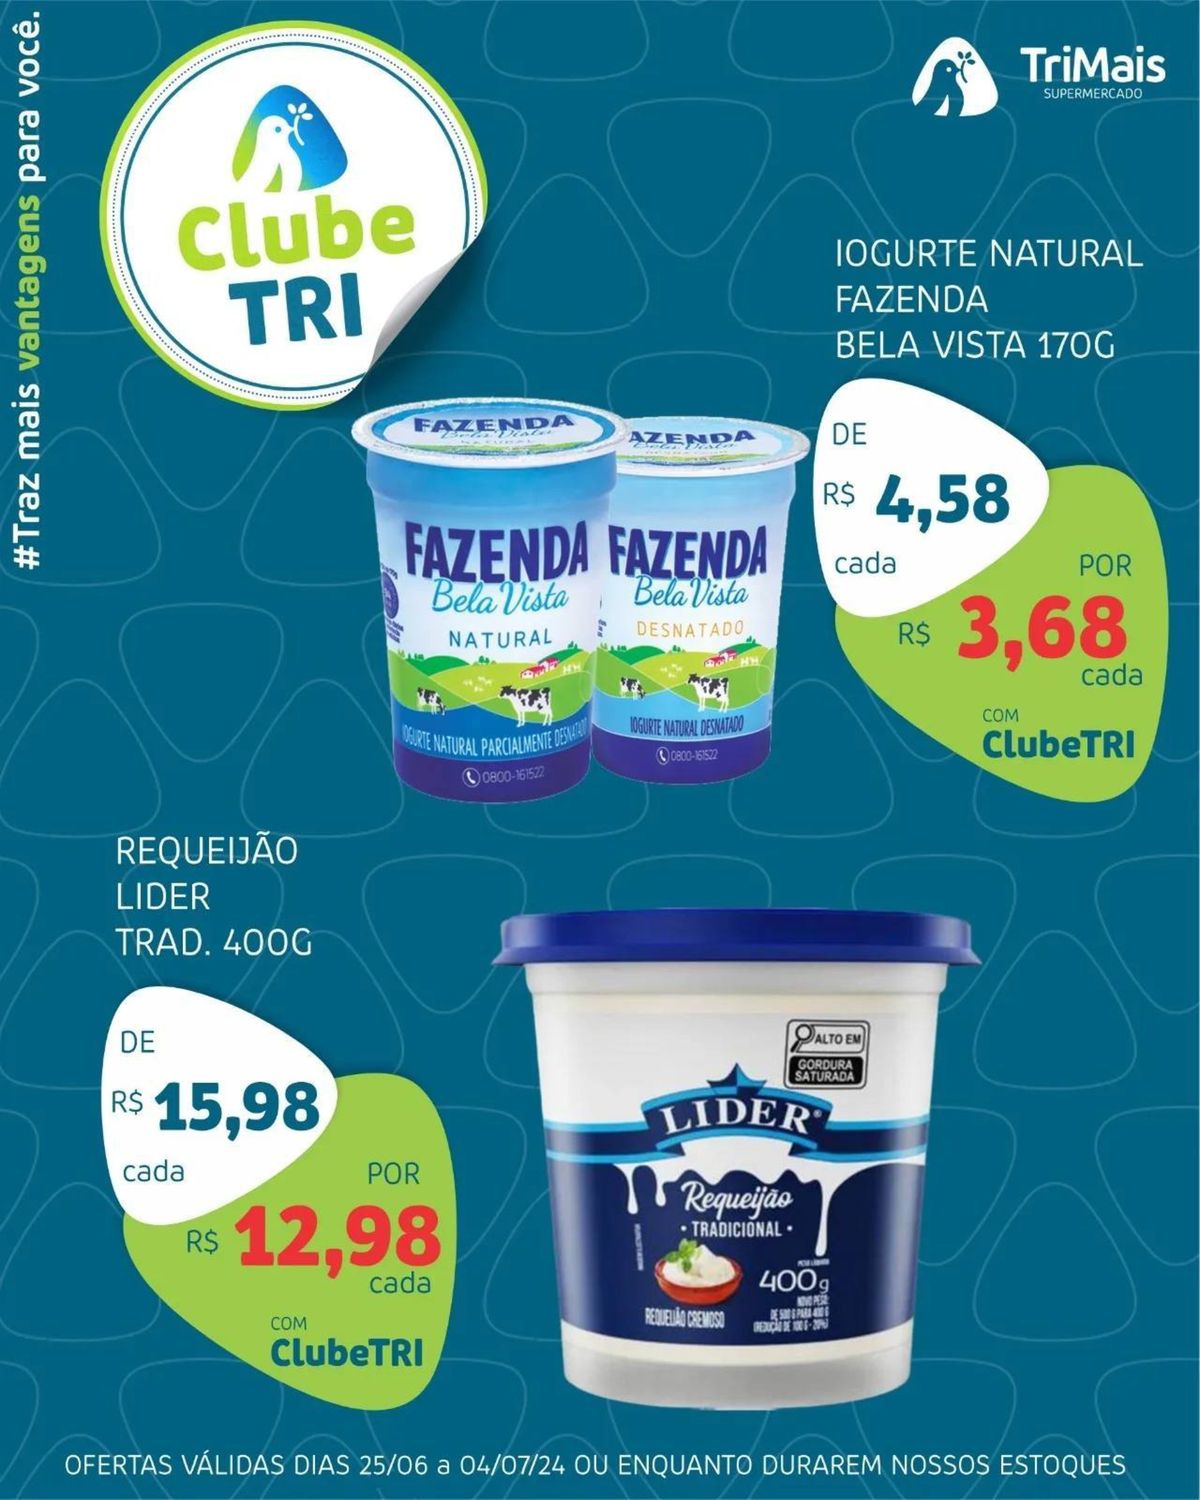 Iogurte Natural Fazenda Bela Vista e Requeijão Nestlé Tradicional